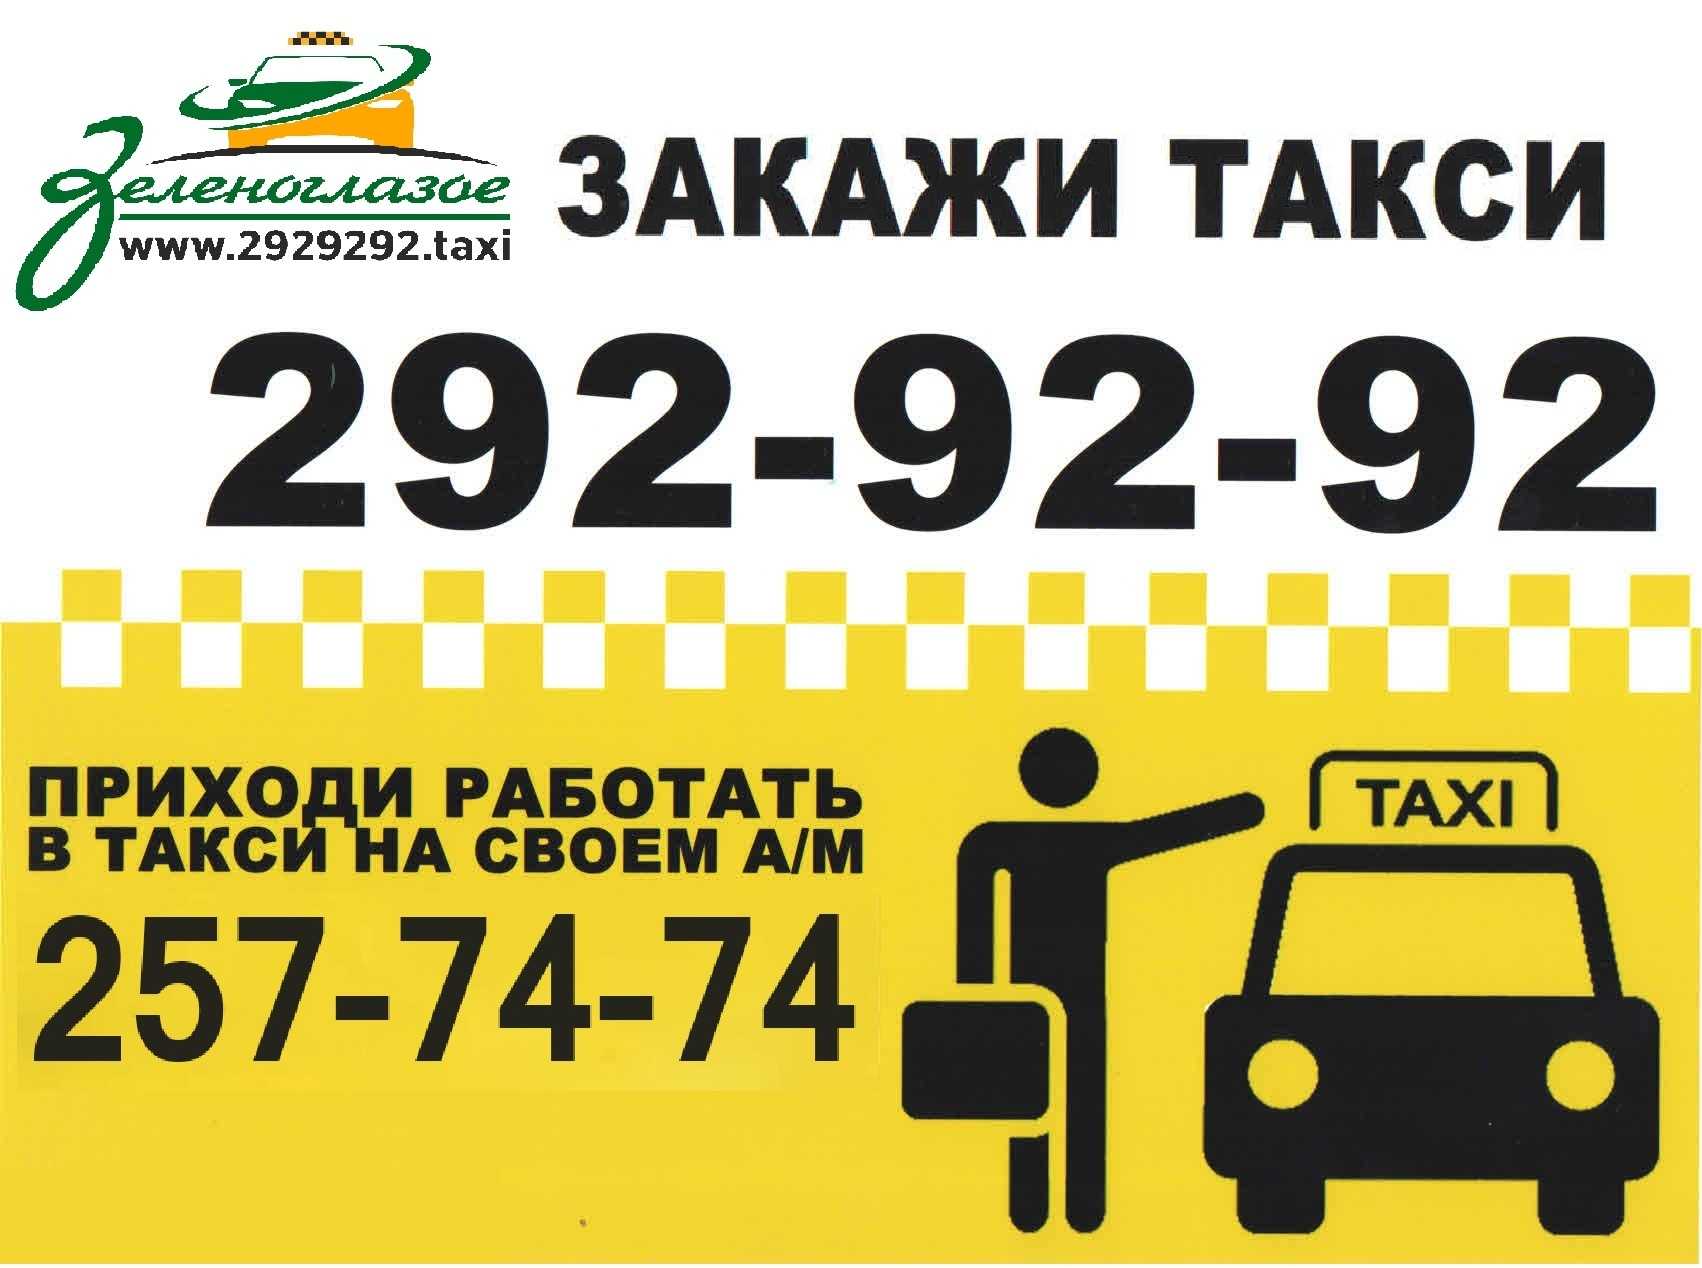 Вызвать такси в уфе. Закажи такси. Самое дешевое такси номер. Такси Уфа. Номер недорогого такси.